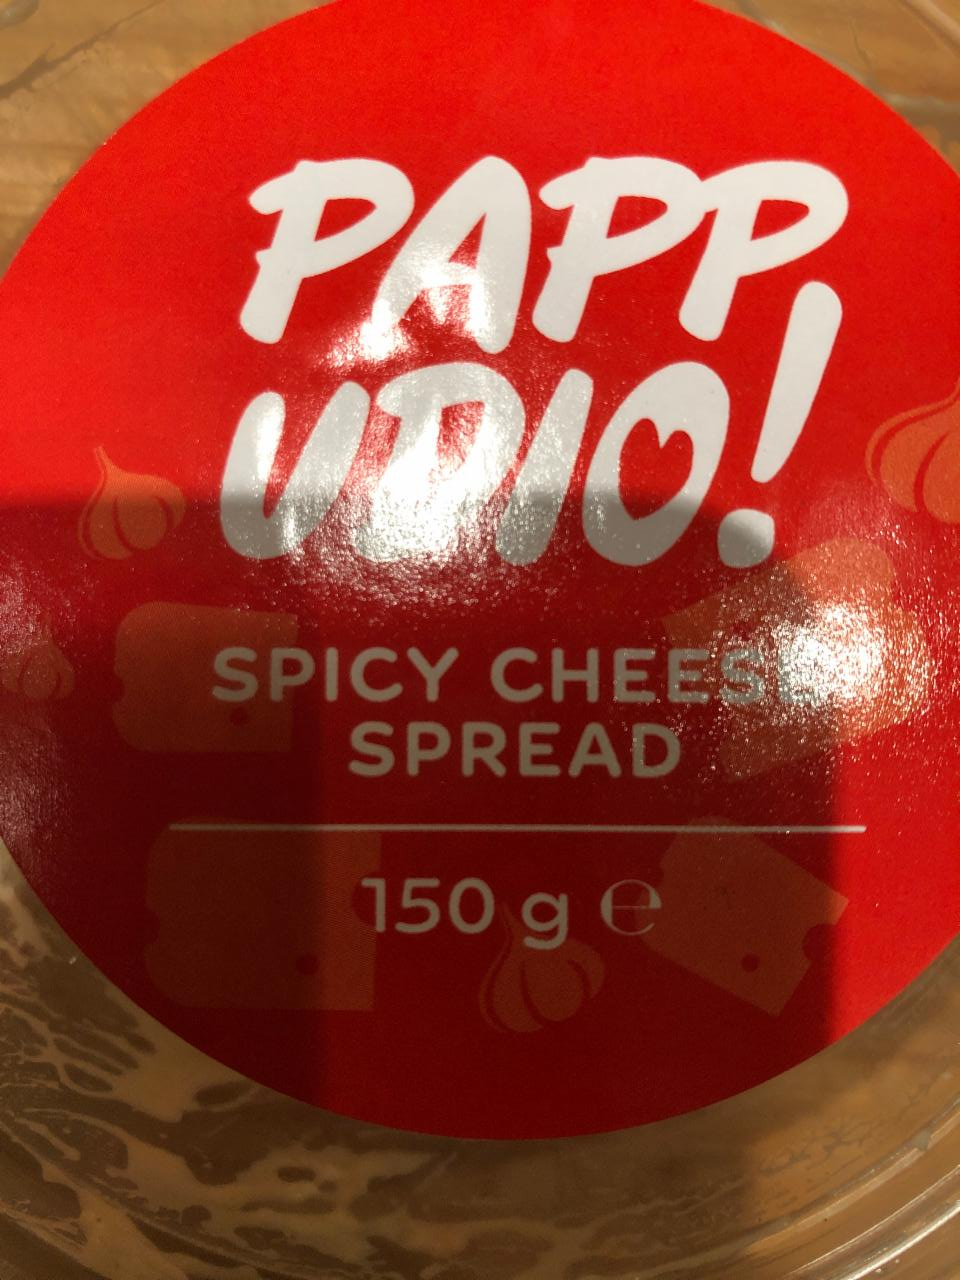 Fotografie - Spicy cheese spread (pikantní sýrová pomazánka) Pappudio